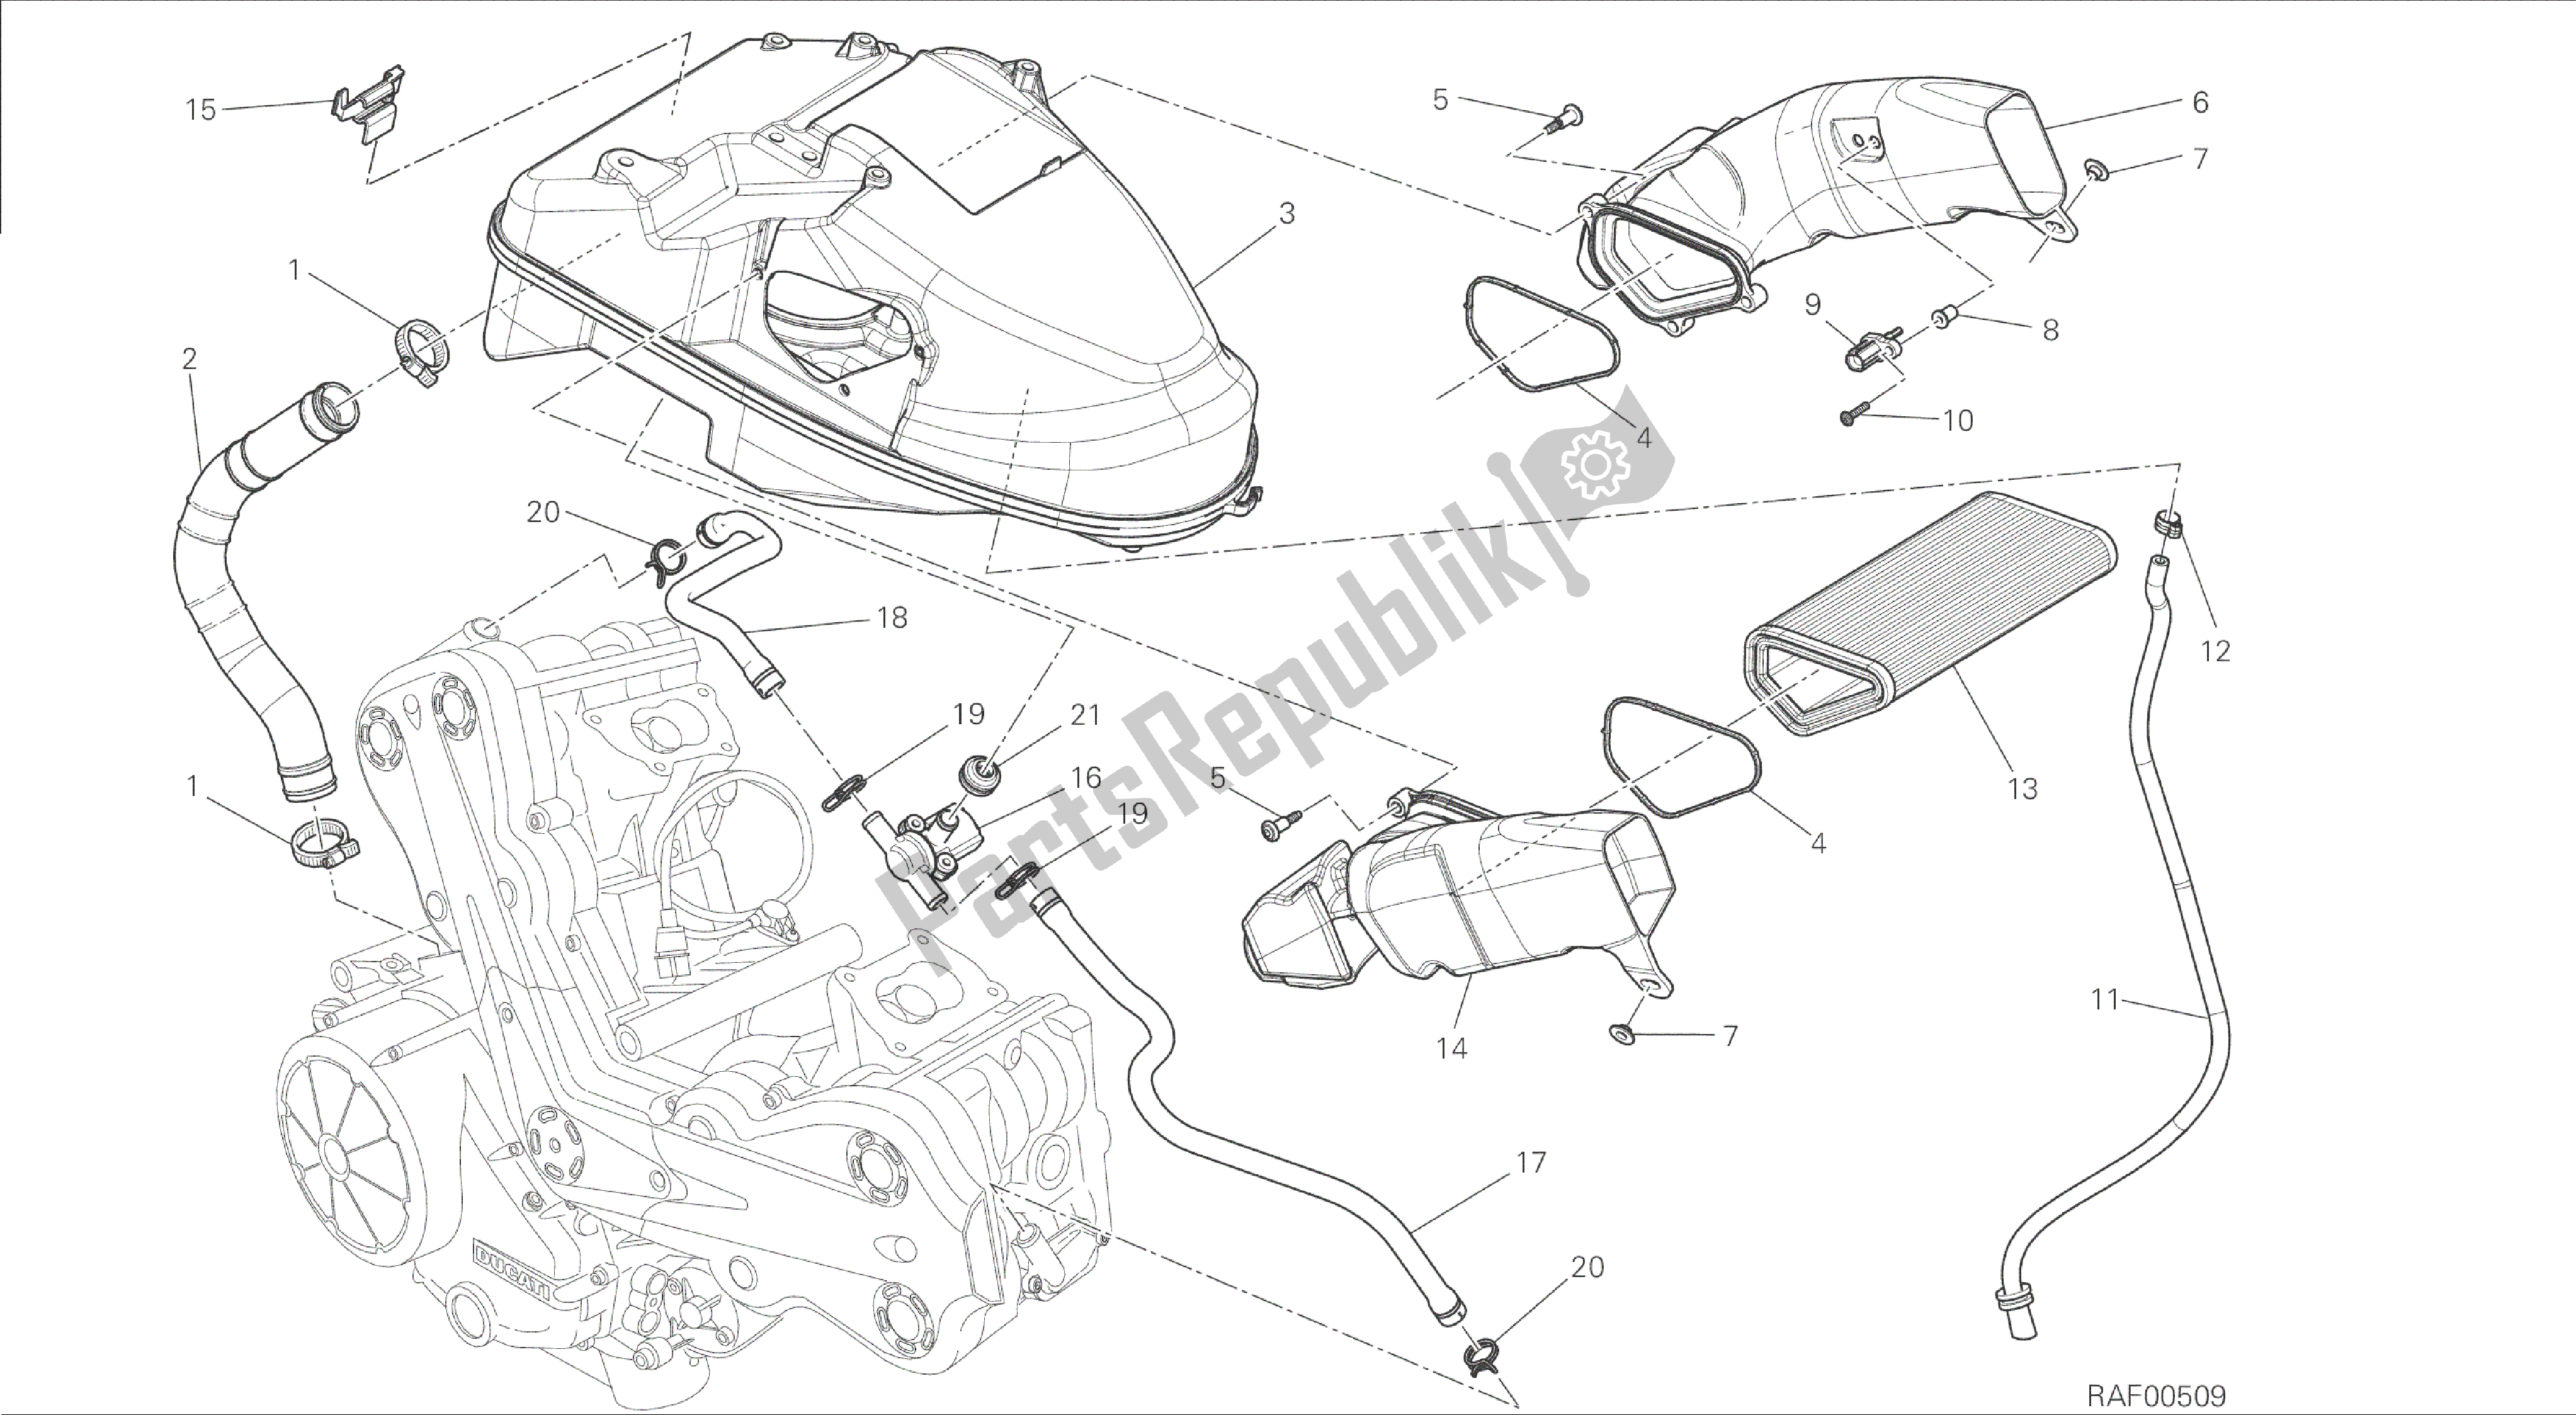 Todas las partes para Dibujo 029 - Marco De Grupo De Admisión [mod: Dvl] de Ducati Diavel 1200 2015